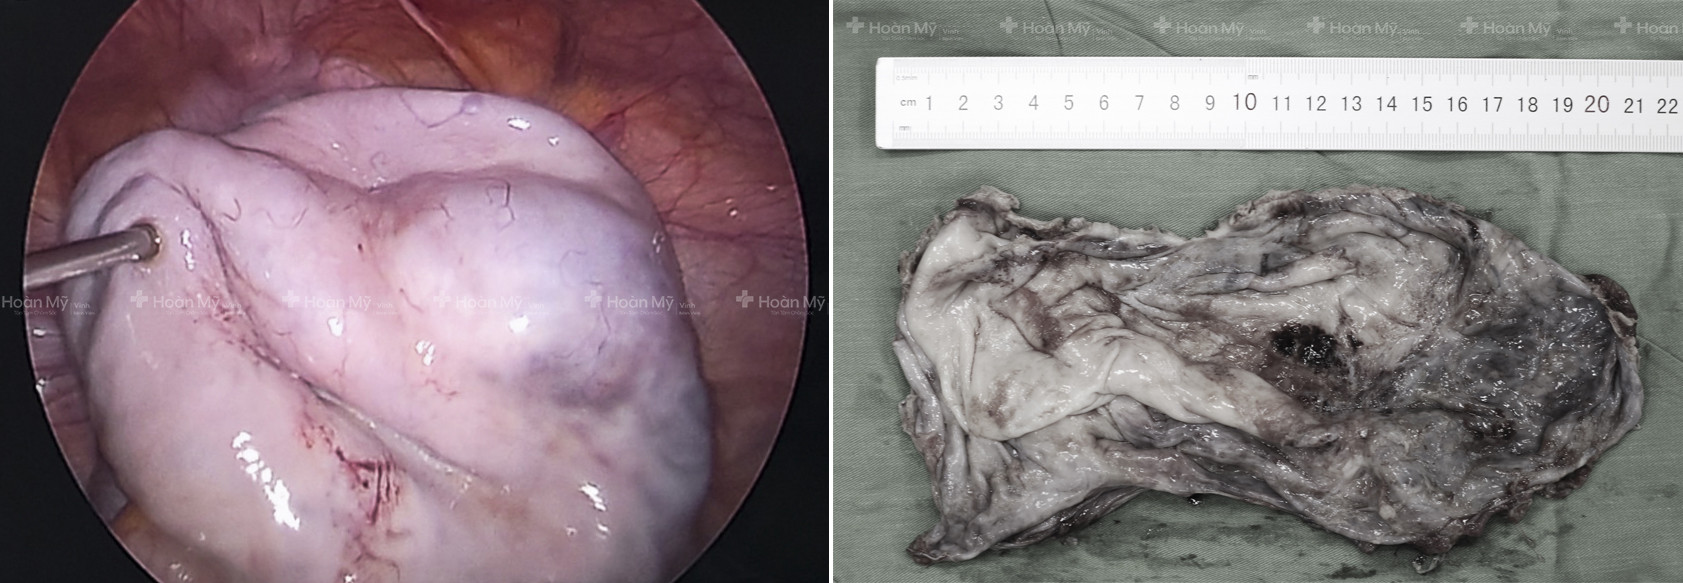 Hình ảnh khối u qua màn hình nội soi (ảnh trái) và hình ảnh khối u sau khi được phẫu thuật (ảnh phải). Ảnh: Kim Chung